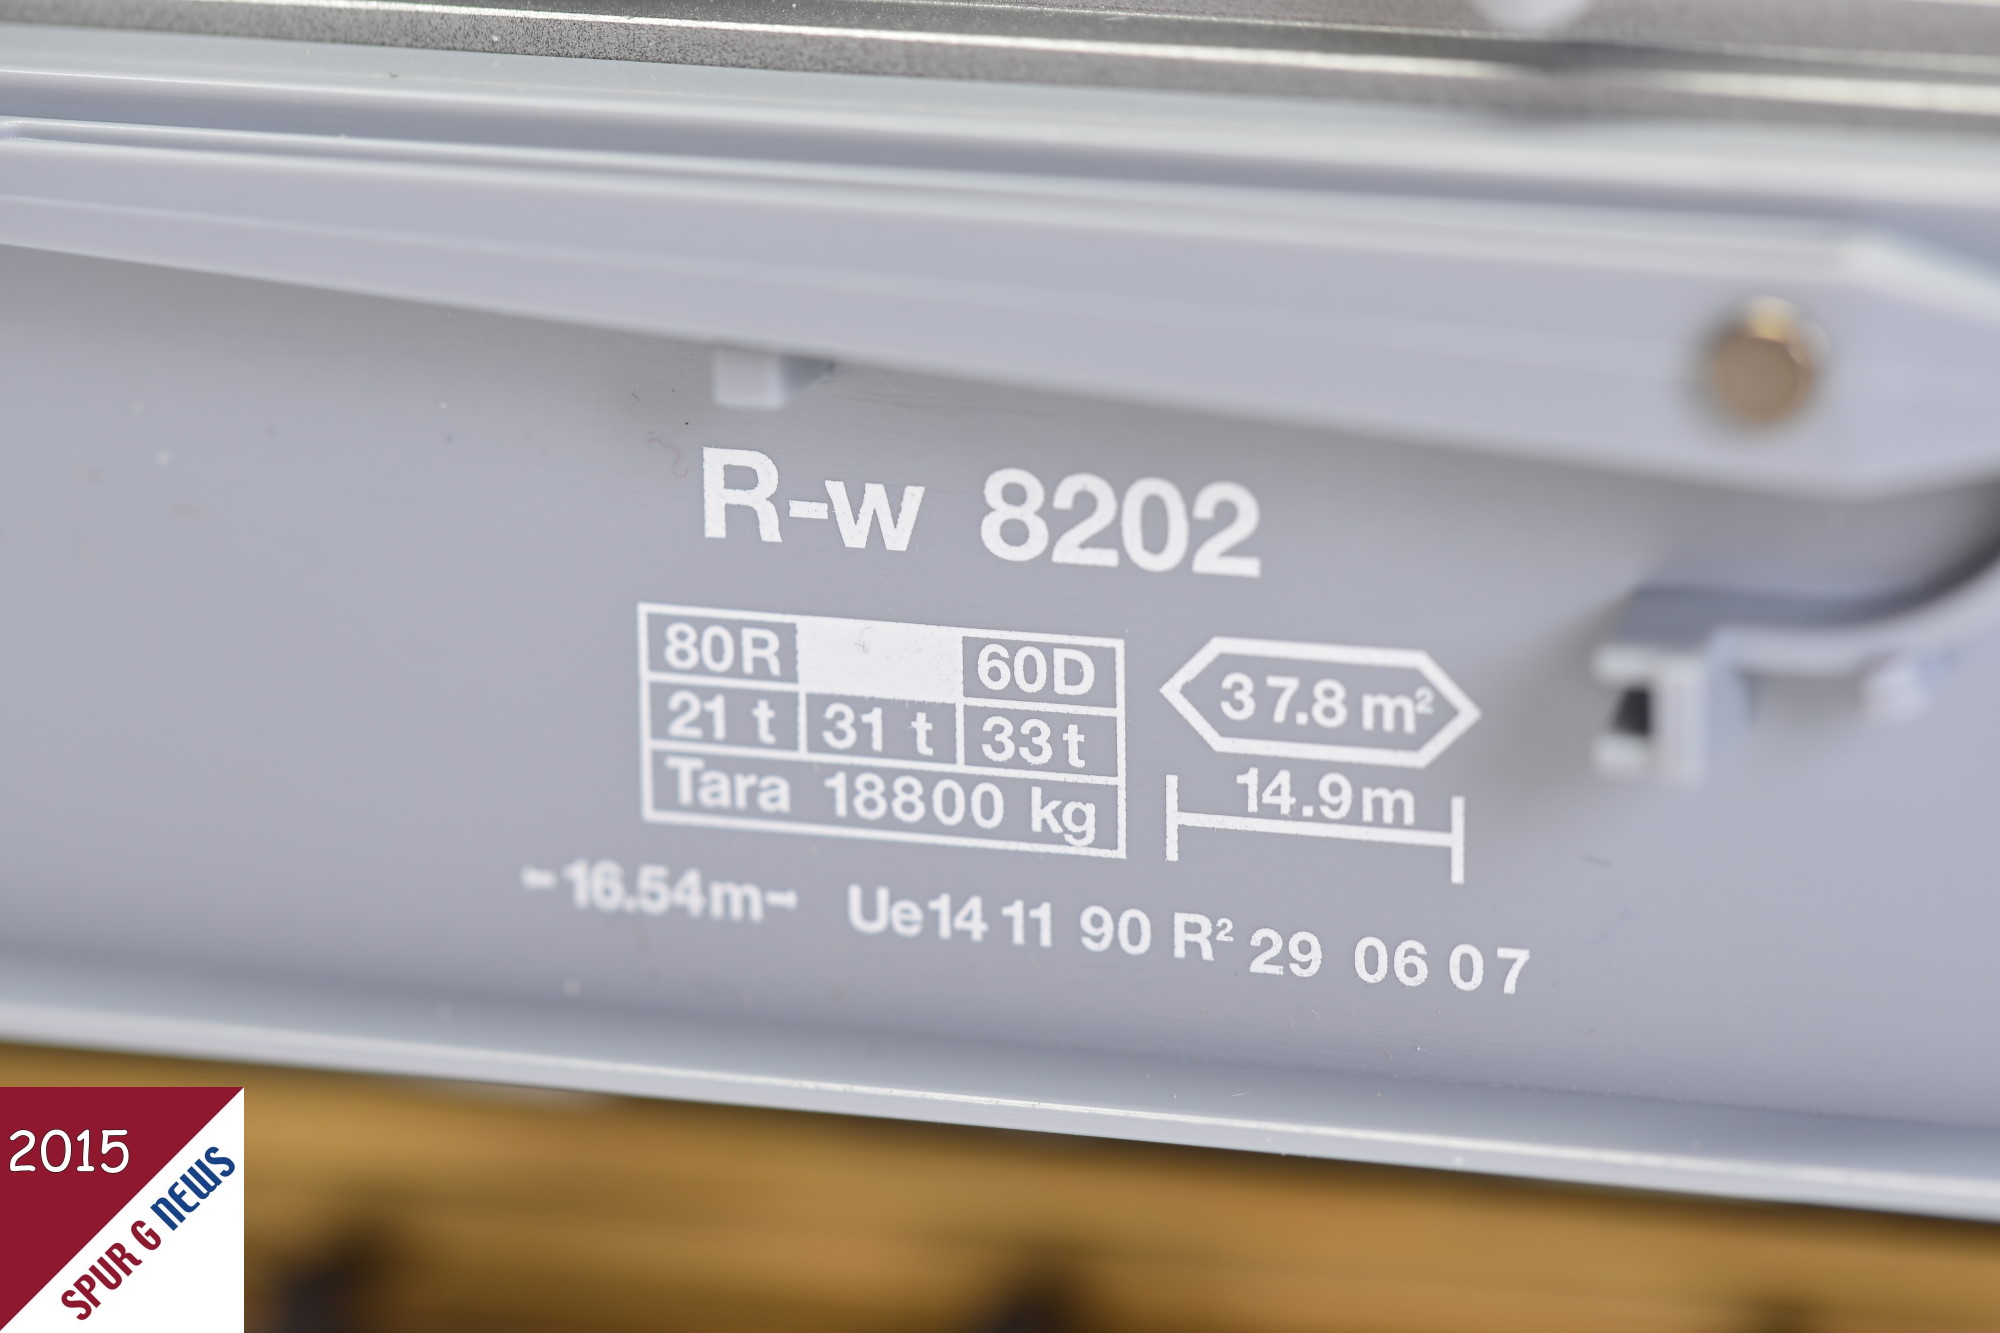 Die Spezifikation des R-w 8202 wurde sauber auf den grauen Rahmen gedruckt. Das angegebene Ma mit 14,9 m stimmt mit den Angaben aus dem RhB Gterverkehr Steckbrief fr diese Wagenart berein. Die 14,9 m stellen die Ladelnge dar. 